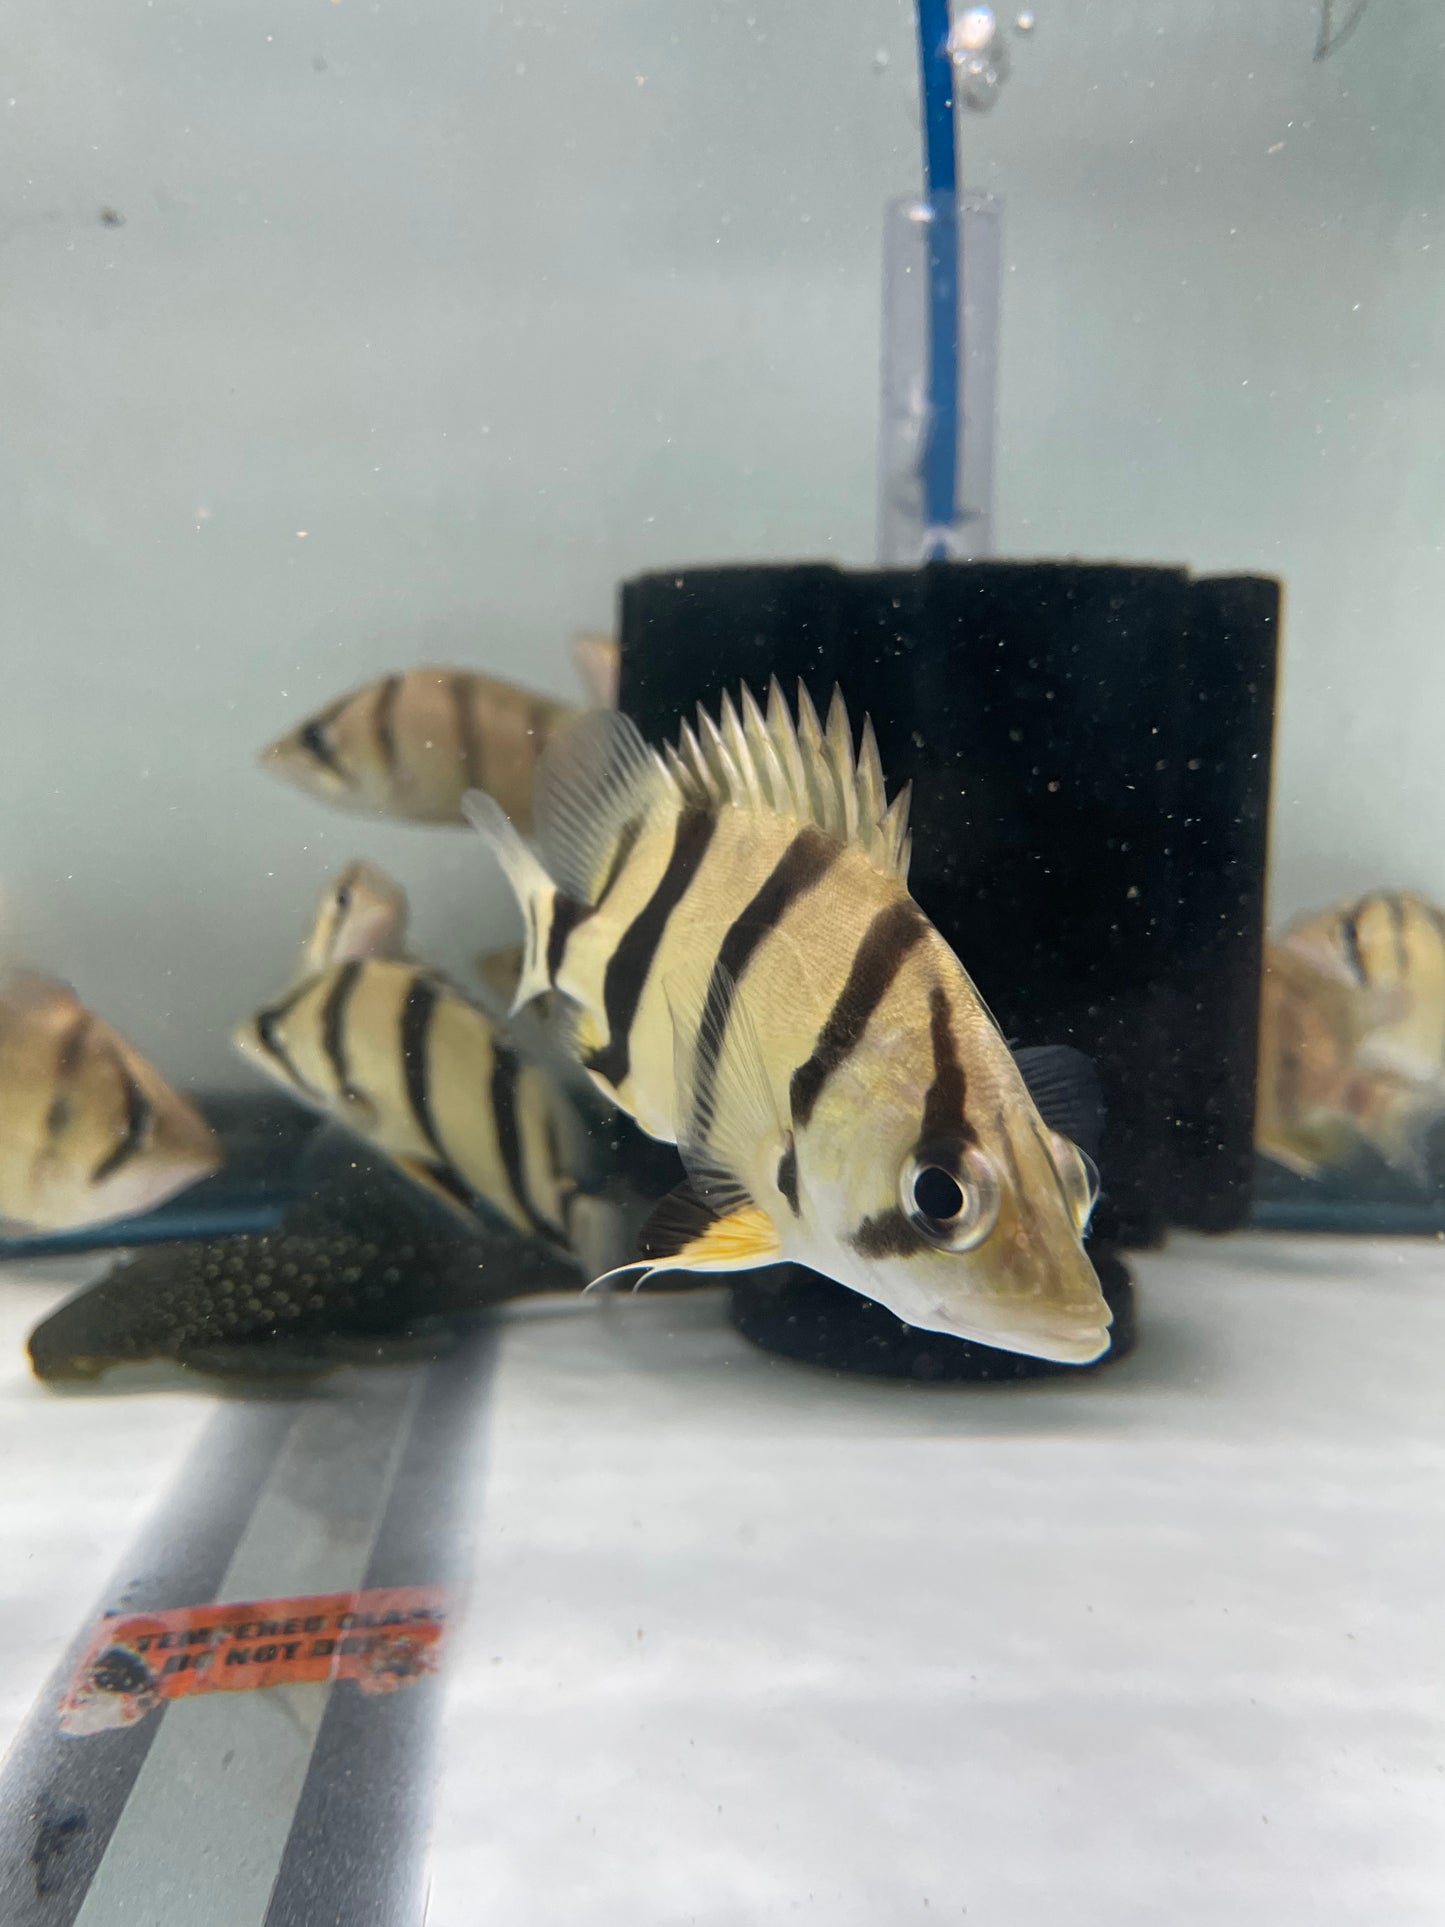 Northern Thailand Tiger Fish (Datnoid)